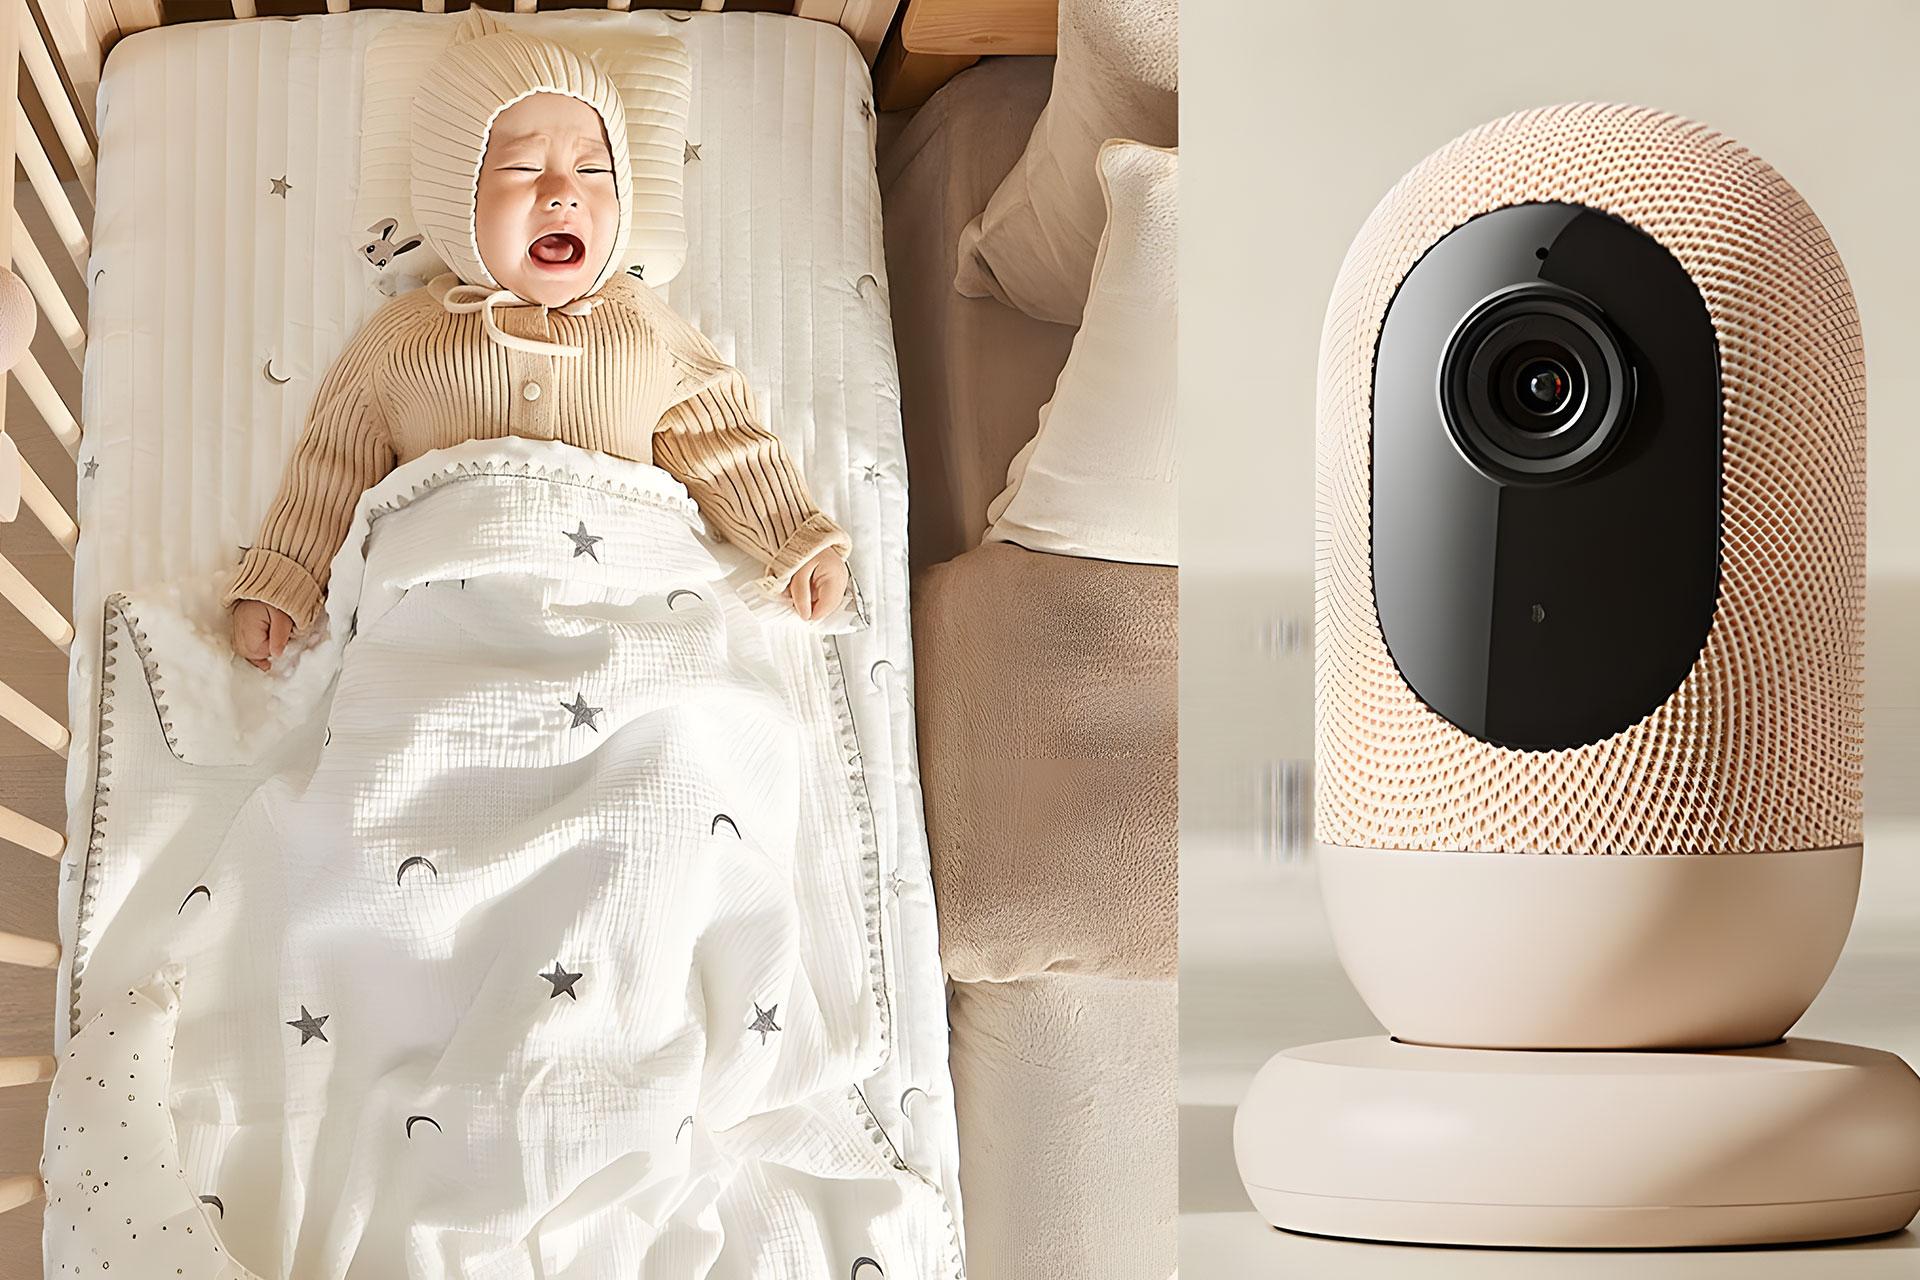 دوربین هوشمند شیائومی در کنار نوزاد گریان